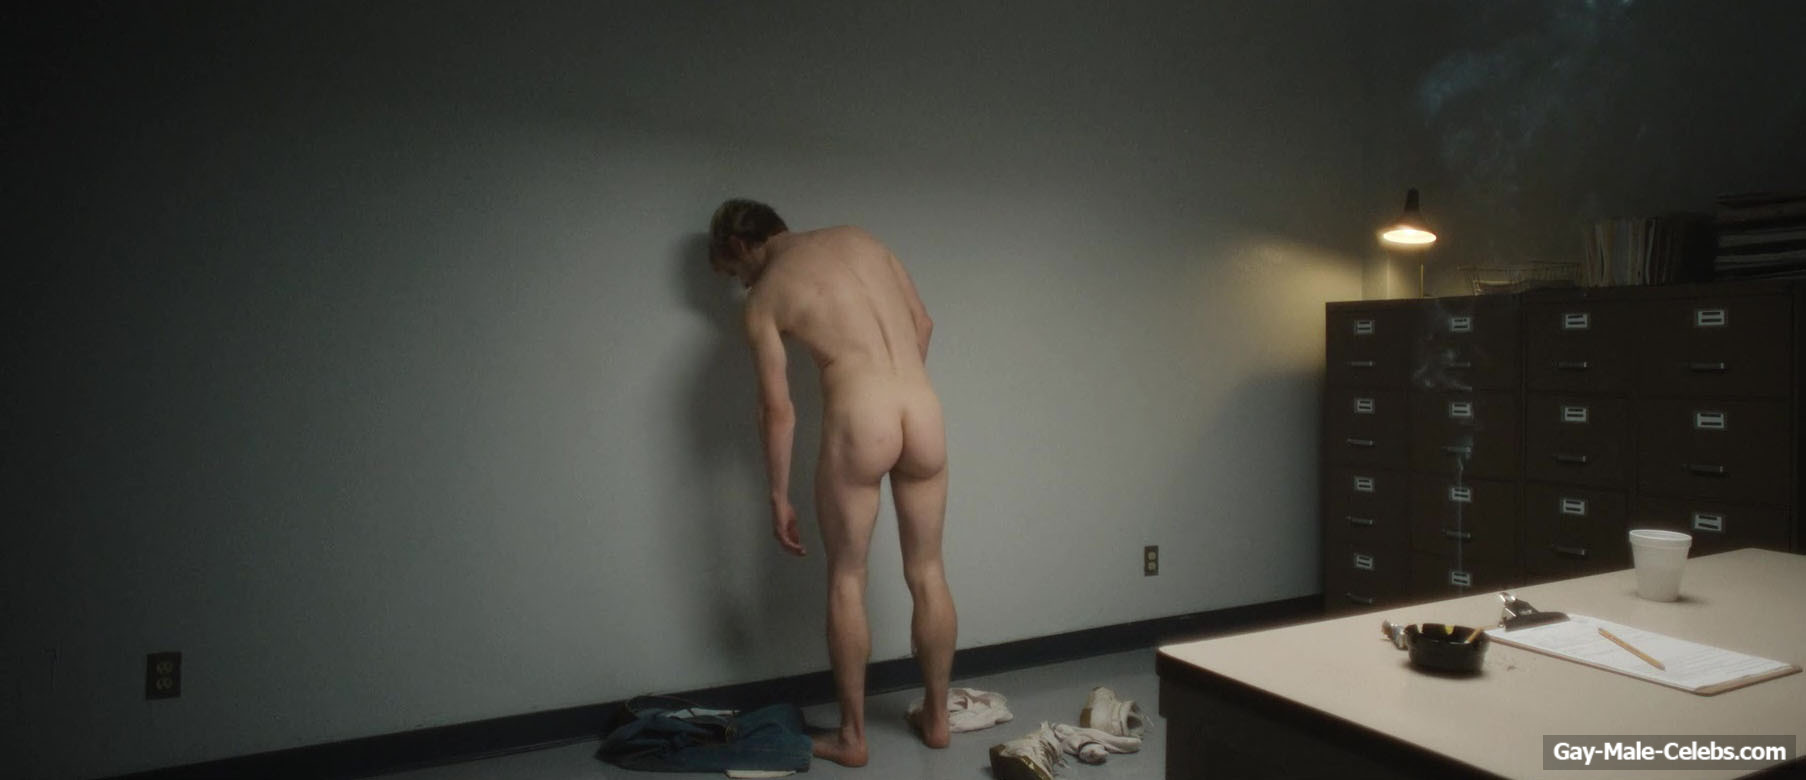 Evan Peters Nude Gay Sex Scenes in Dahmer